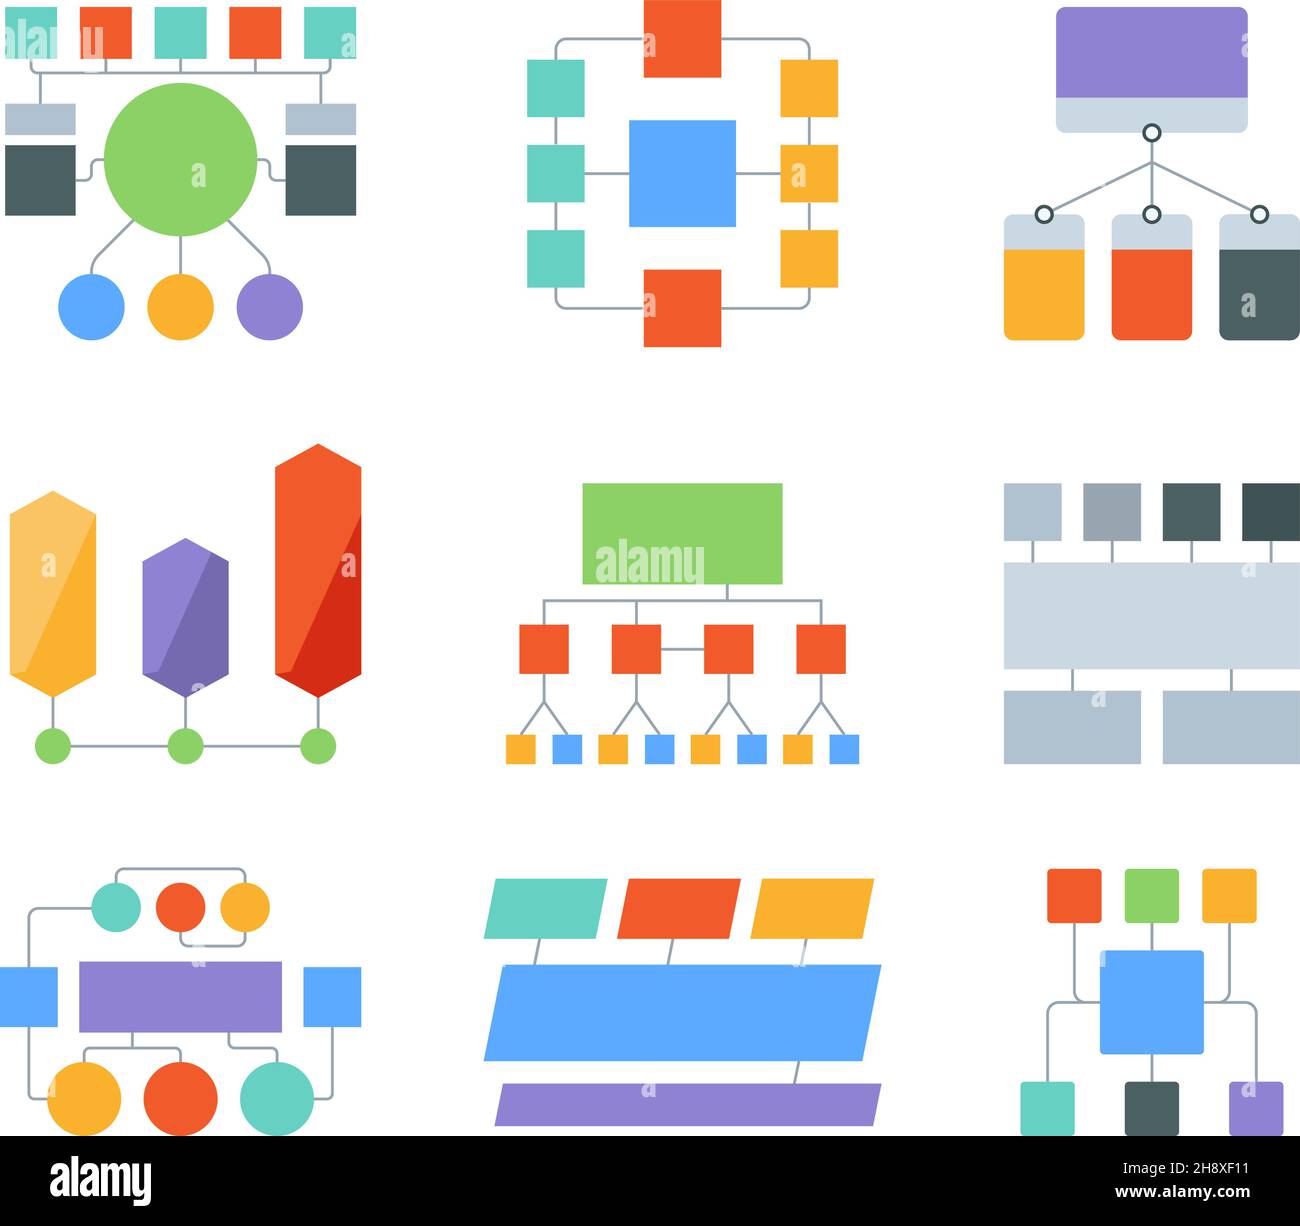 Flussdiagramm-Elemente. Infografik Vorlagen Business-Prozesse Diagramme Workflow-Diagramm-Formen mit Platz für Text grellen Vektor-Set Stock Vektor